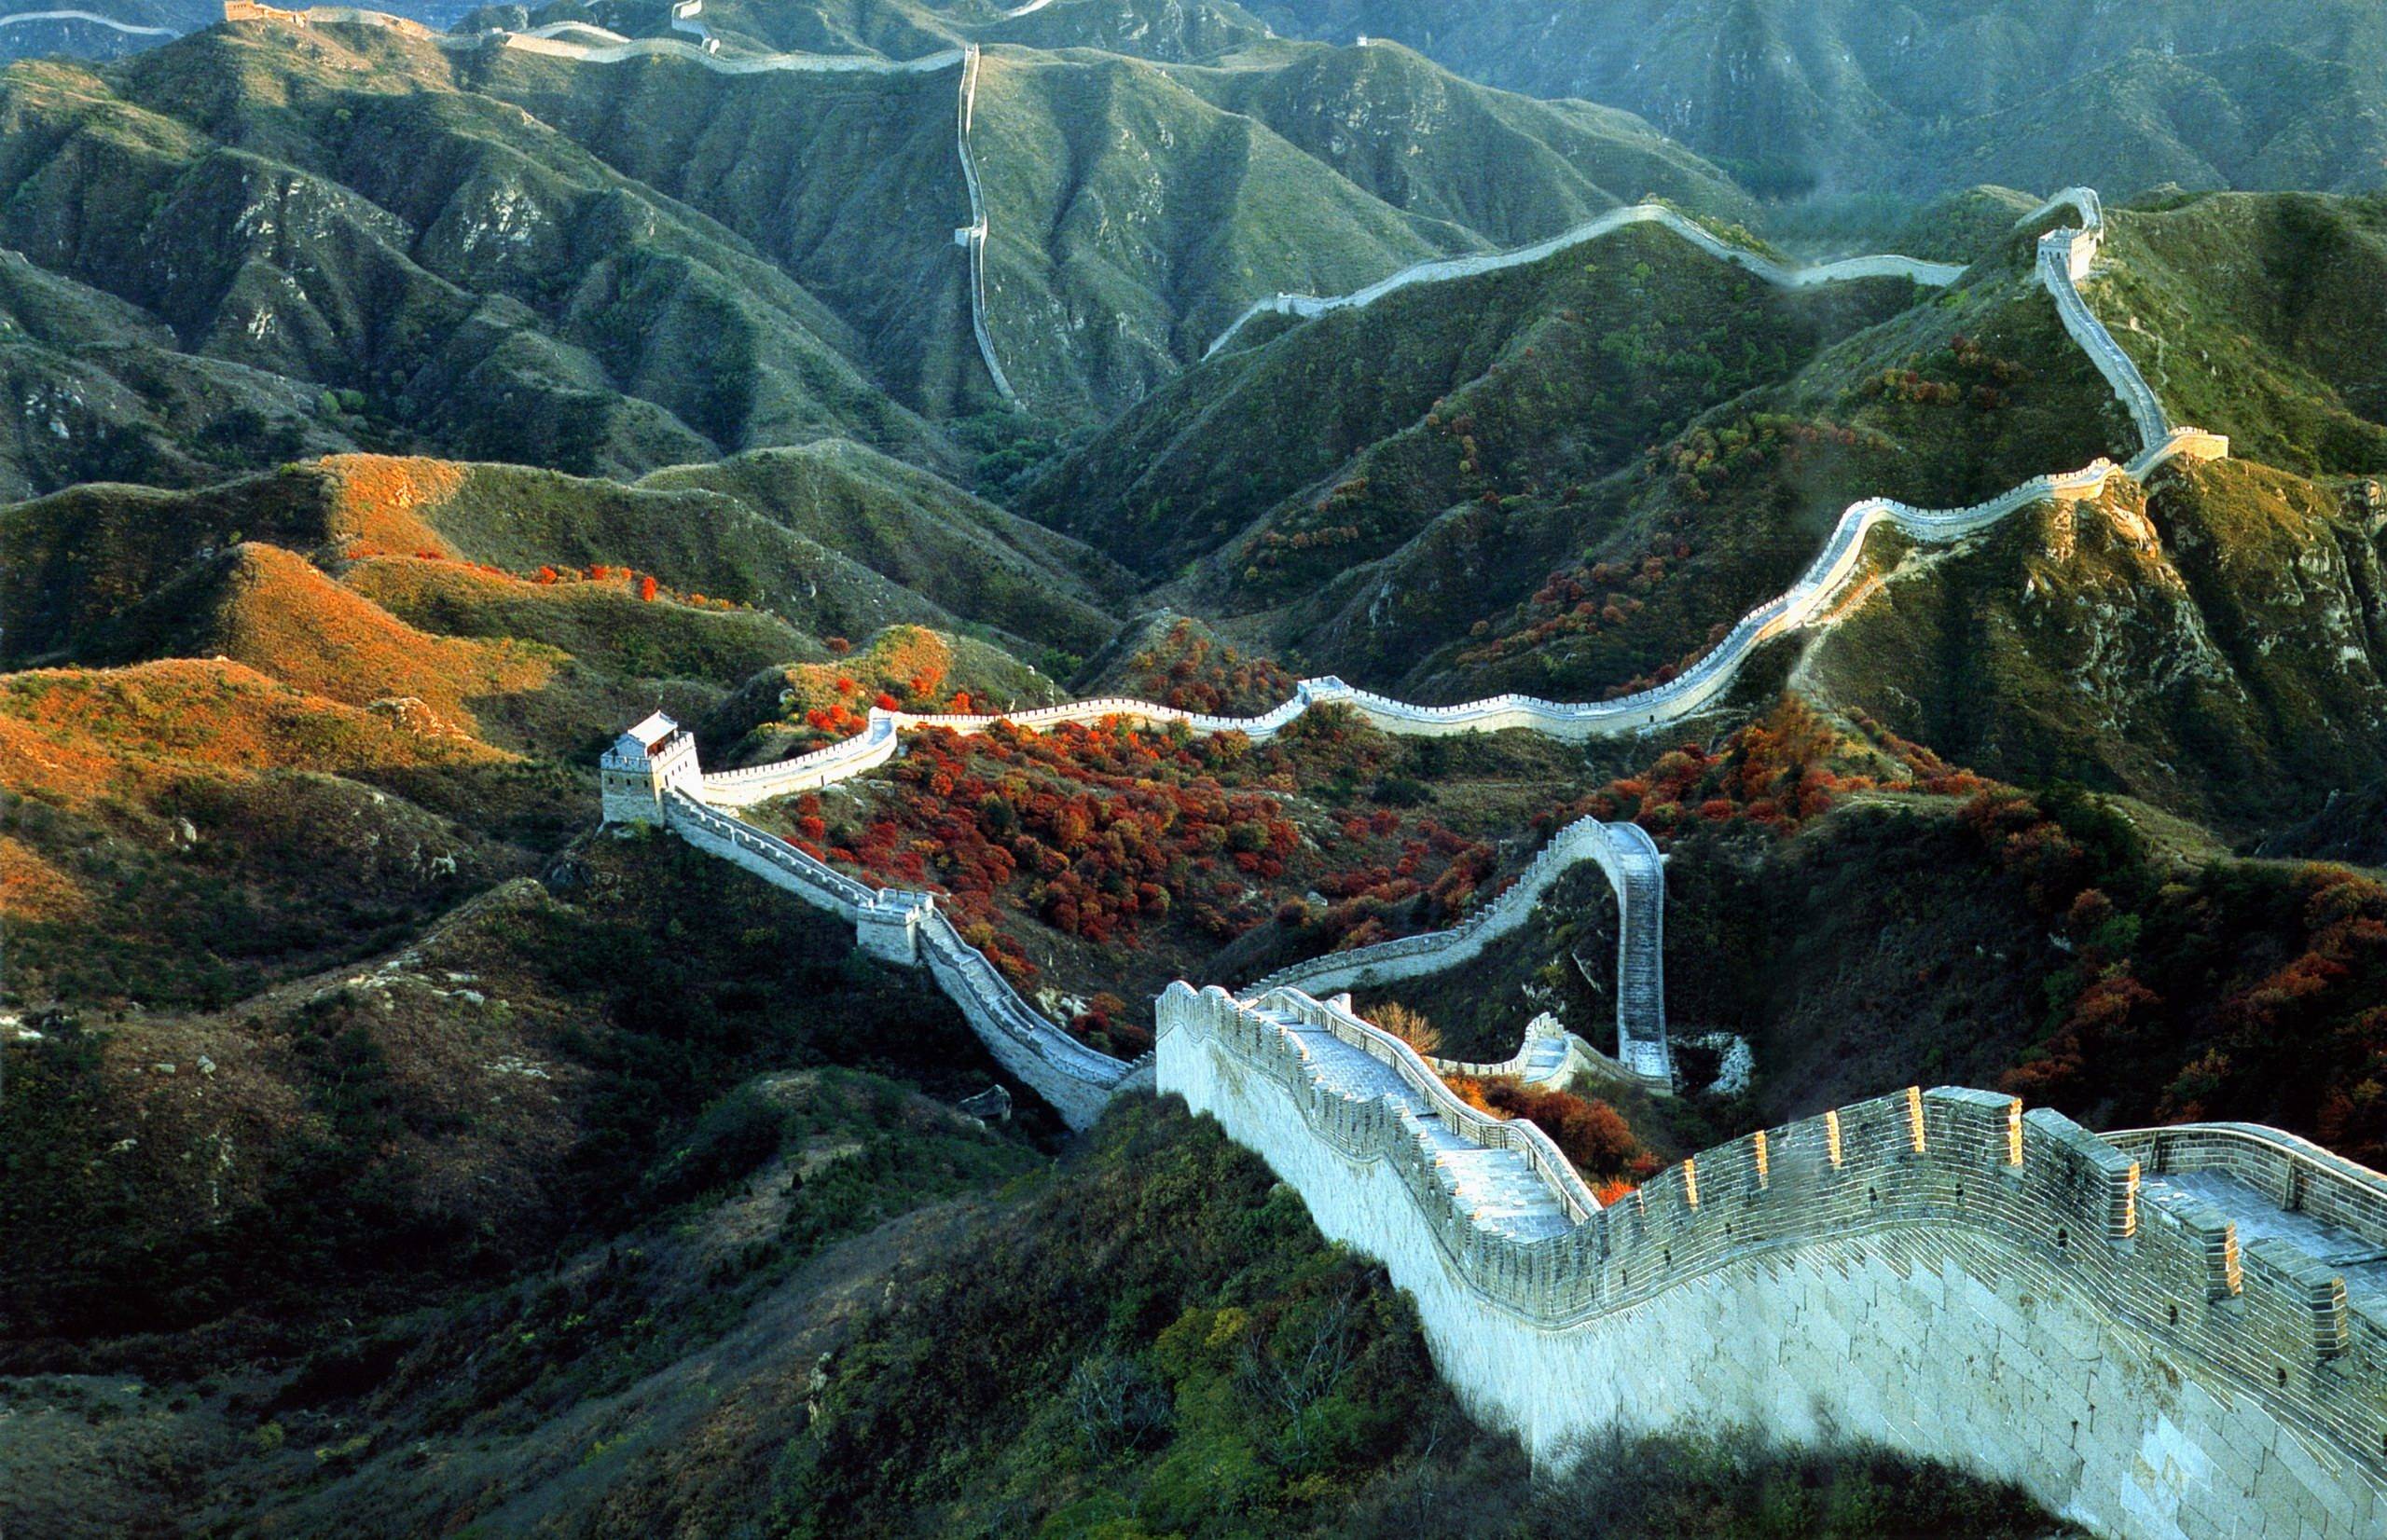 Badaling Great Wall, China Travel photo and wallpaper